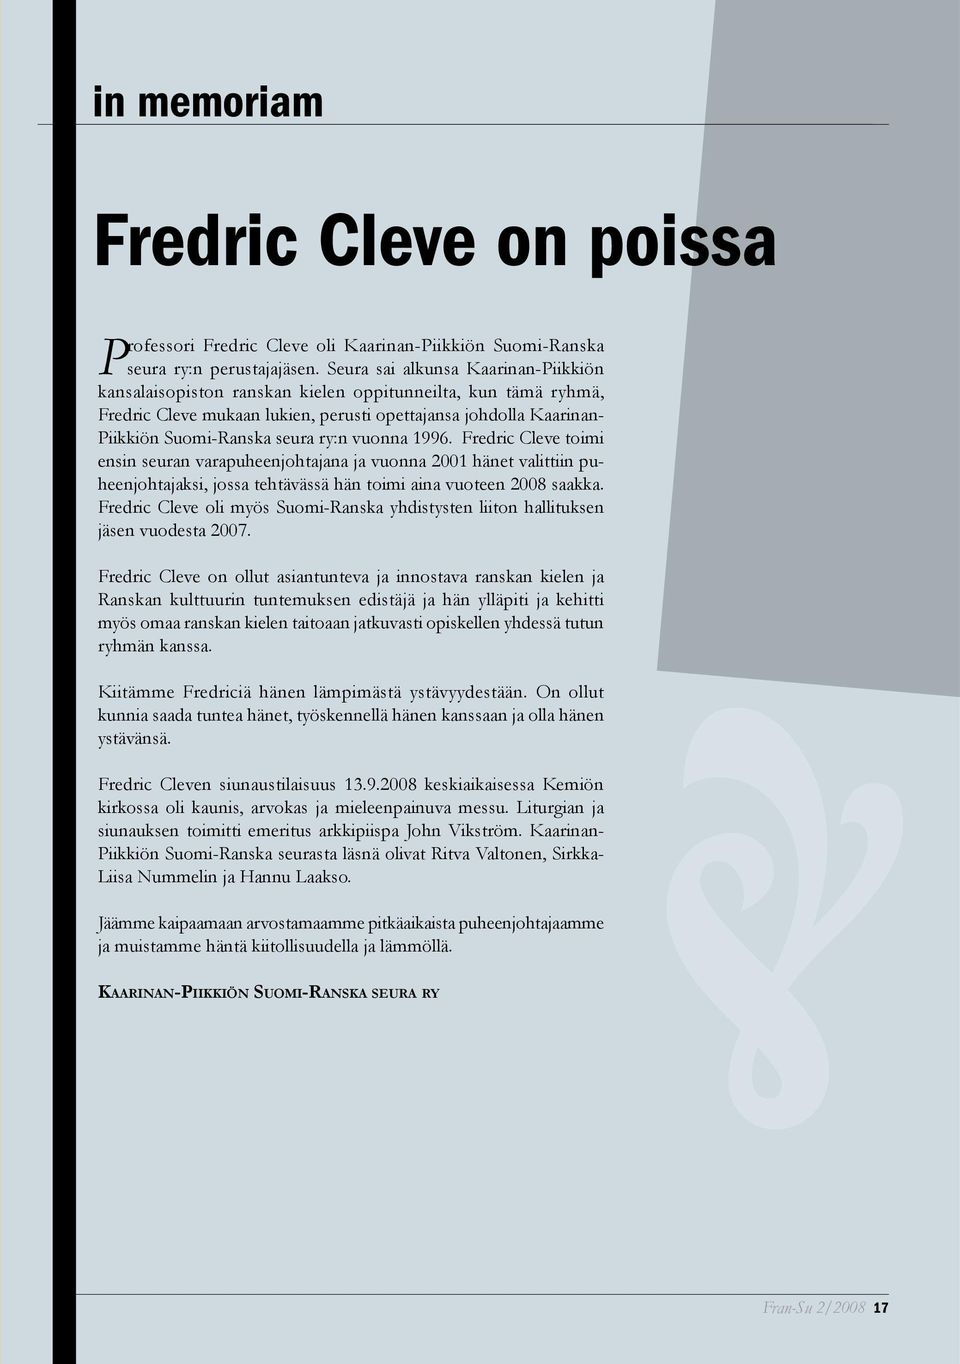 vuonna 1996. Fredric Cleve toimi ensin seuran varapuheenjohtajana ja vuonna 2001 hänet valittiin puheenjohtajaksi, jossa tehtävässä hän toimi aina vuoteen 2008 saakka.